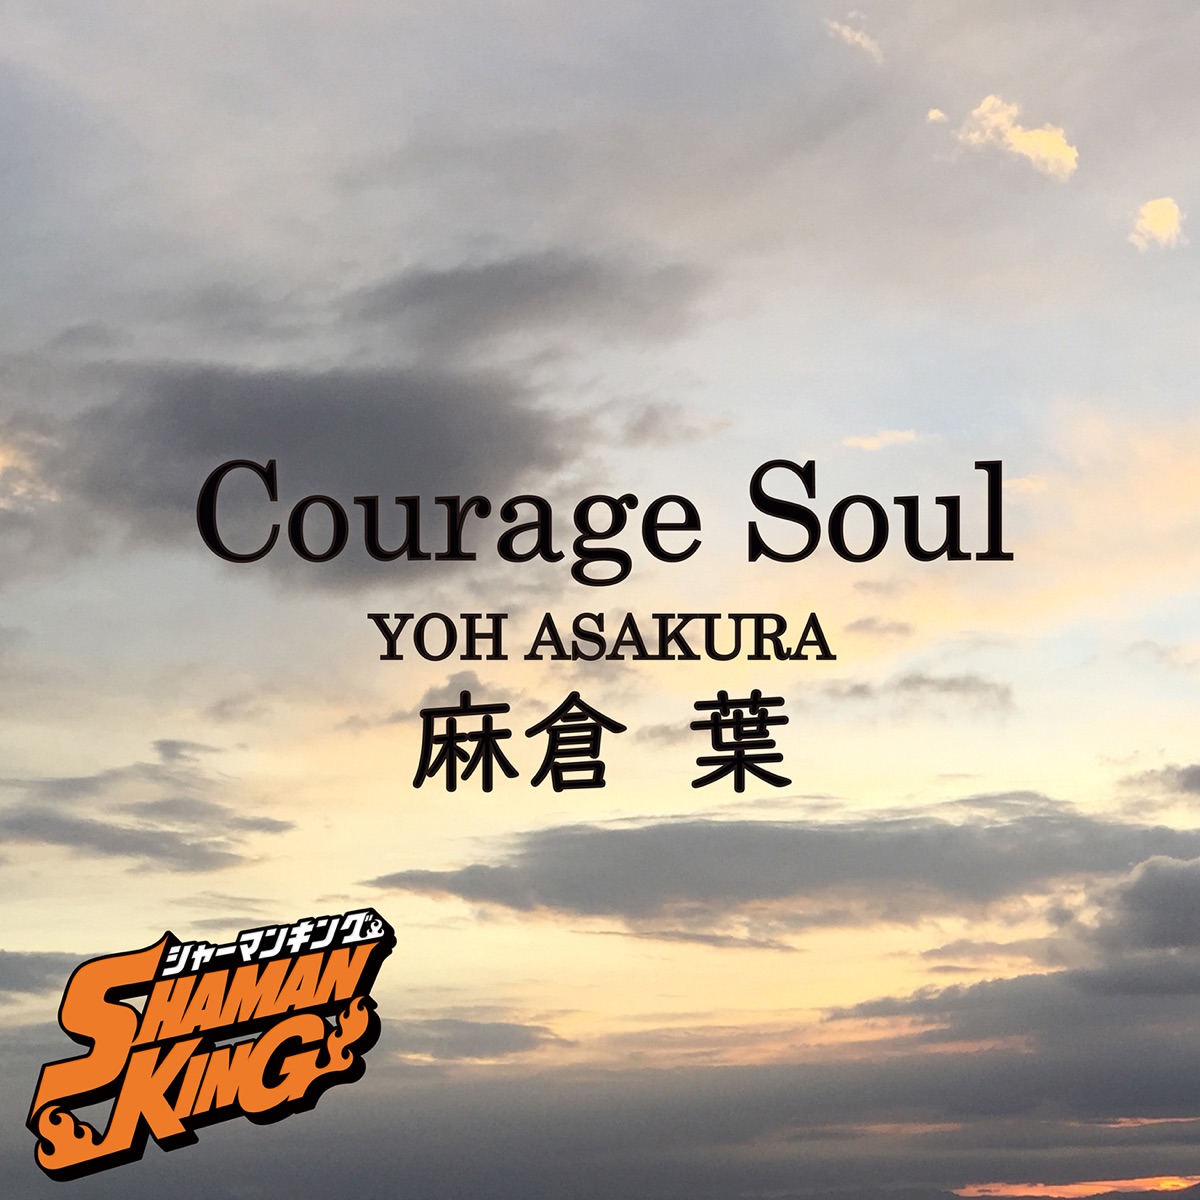 『麻倉葉(日笠陽子) - Courage Soul』収録の『Courage Soul』ジャケット